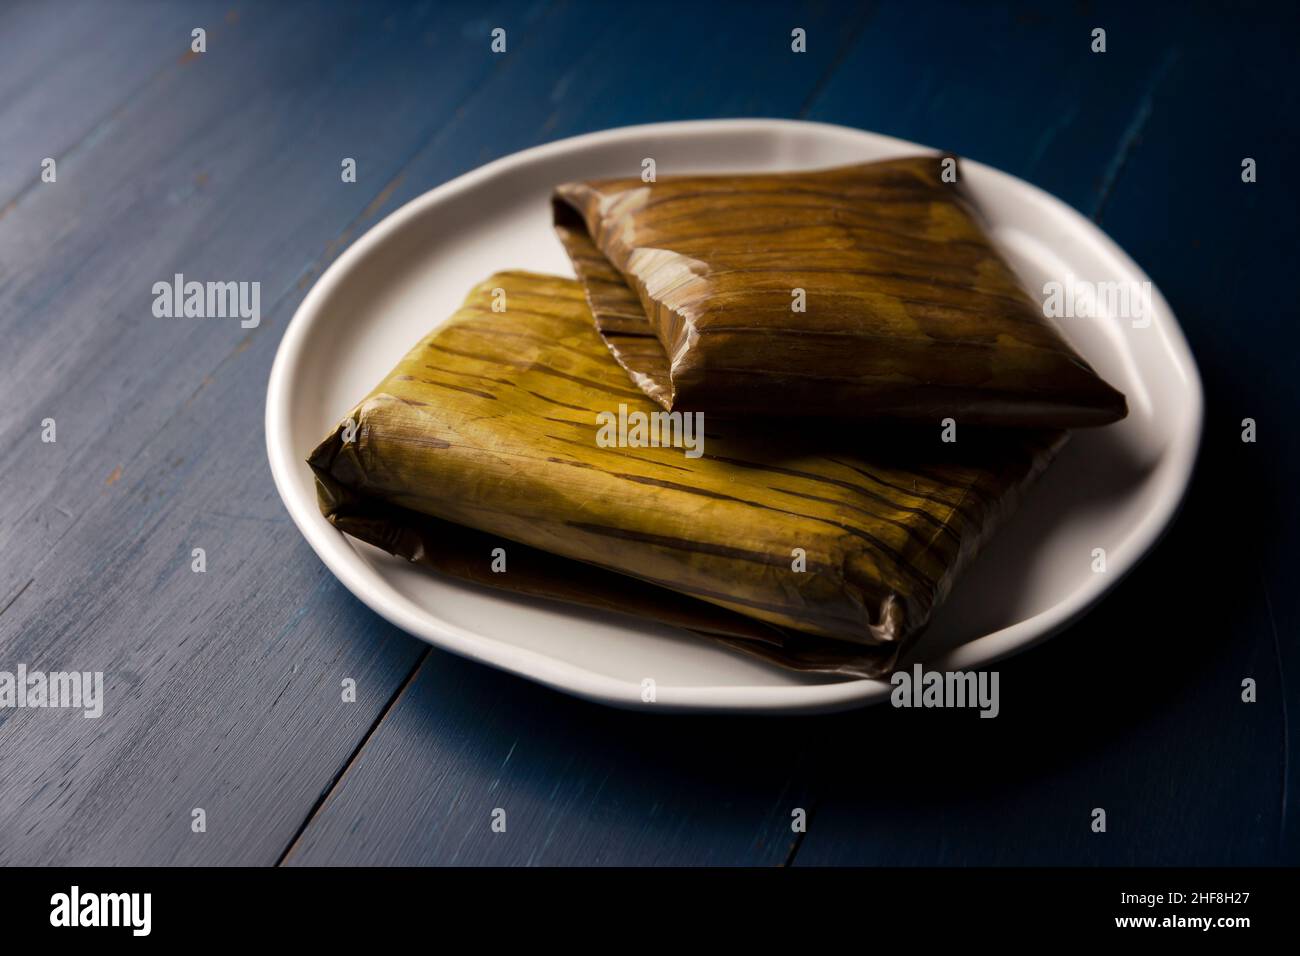 Plat préhispanique typique du Mexique et de certains pays d'Amérique latine.Pâte de maïs enveloppée de feuilles de banane.Les tamales sont cuits à la vapeur. Banque D'Images